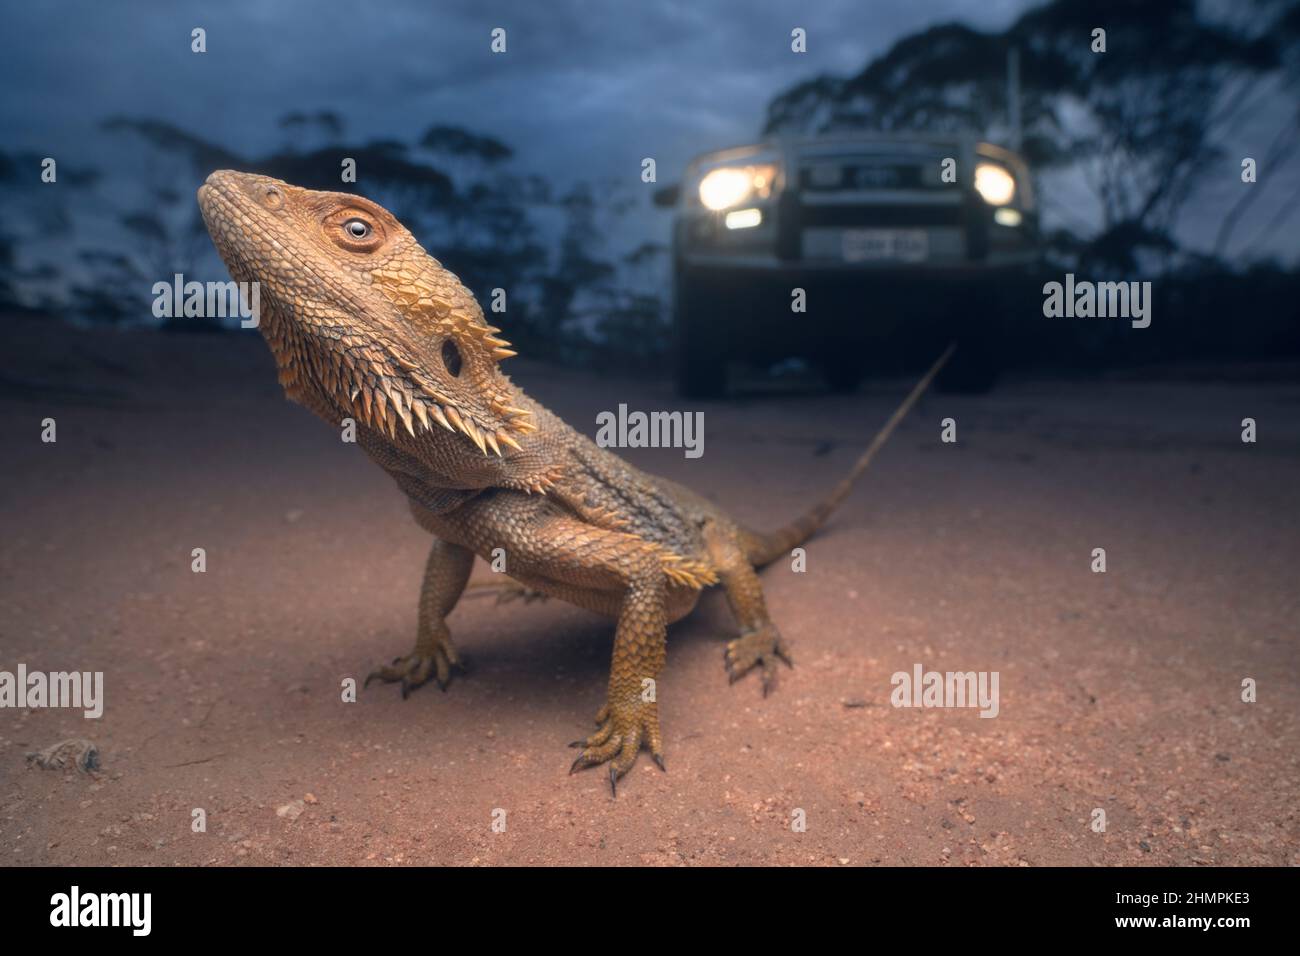 Dragon barbu sauvage (Pogona vitticeps) debout au milieu d'une route de terre au crépuscule avec véhicule en arrière-plan, Australie Banque D'Images